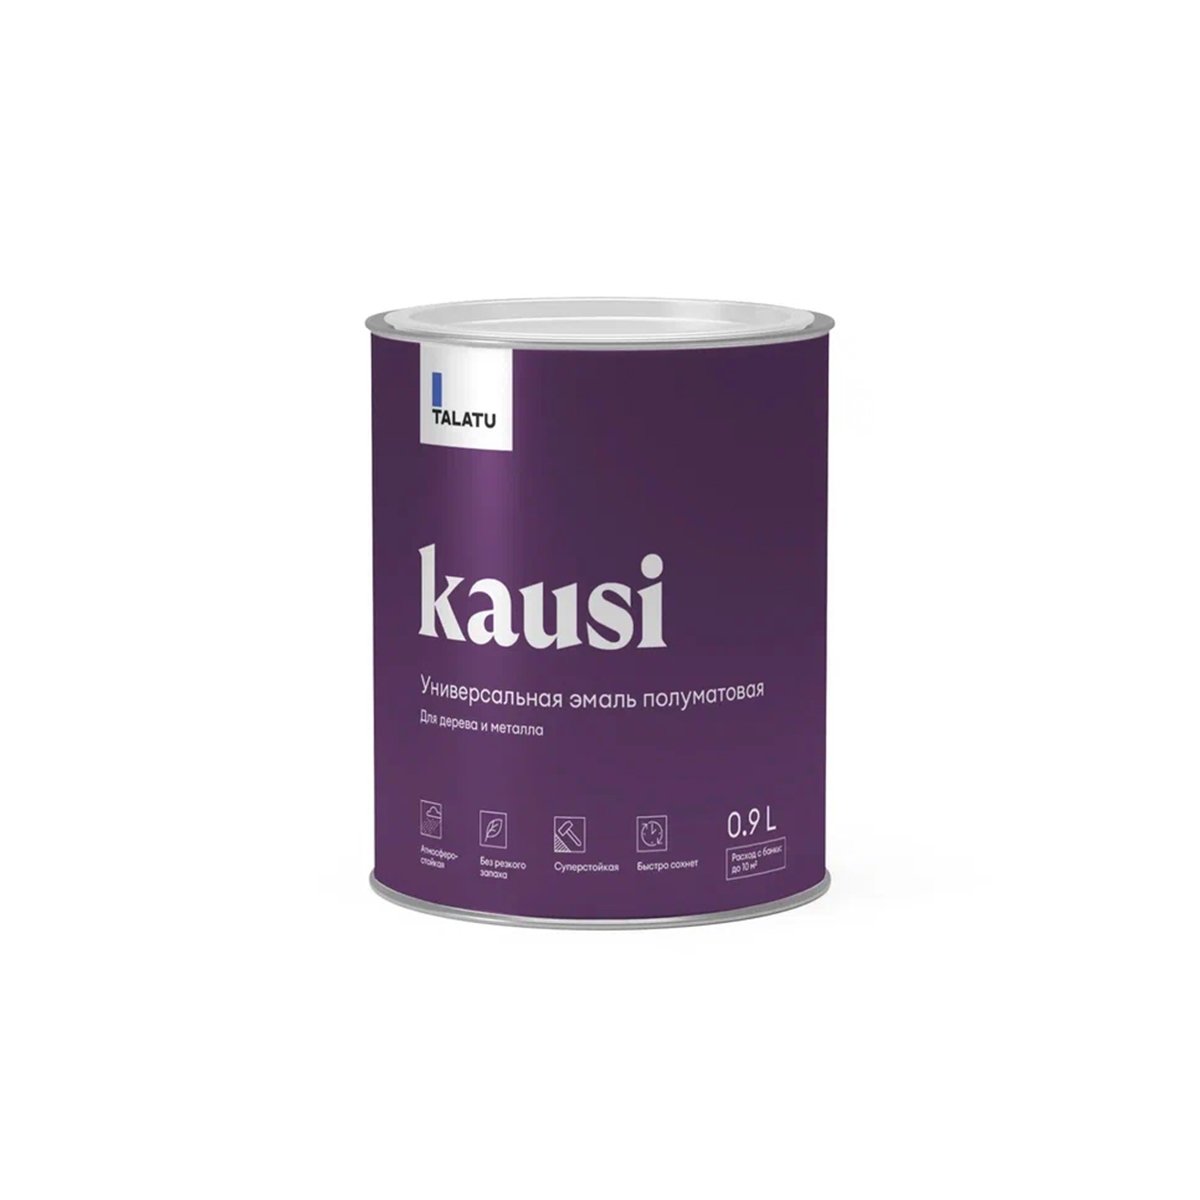 Эмаль универсальная Talatu Kausi, алкидная, полуматовая, база C, бесцветная, 0,9 л алкидная эмаль для радиаторов krafor